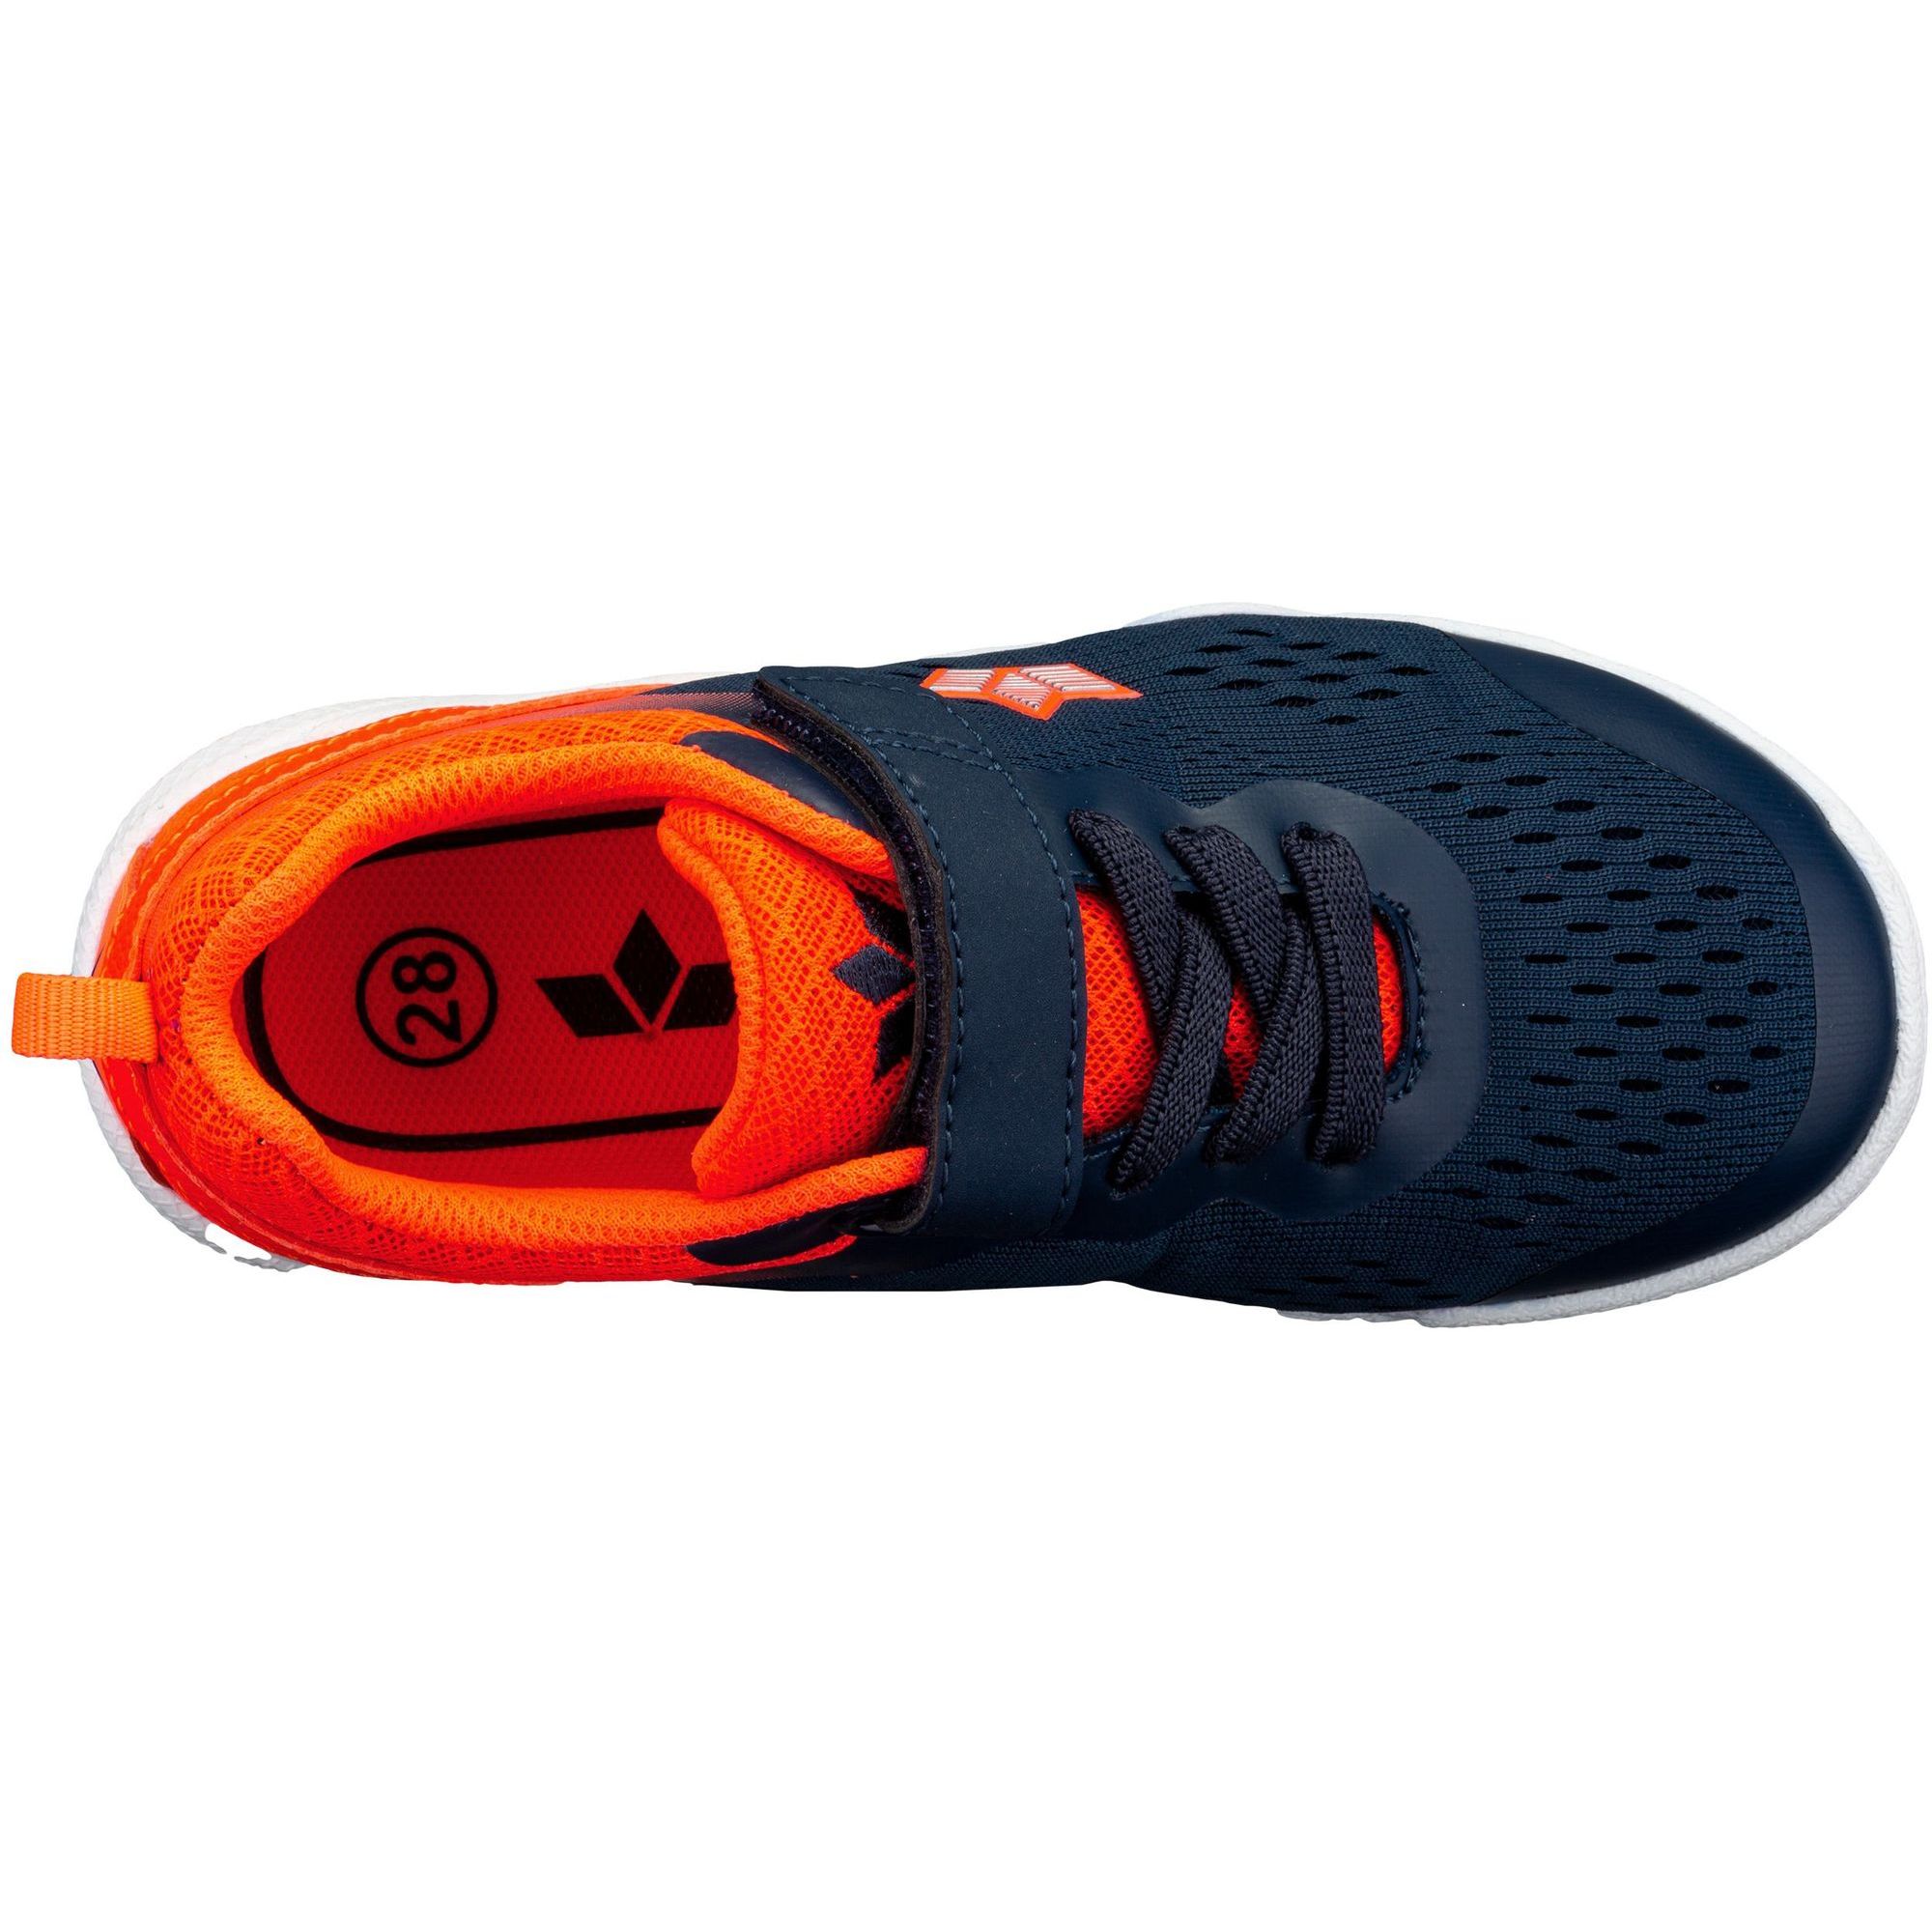 Lico marine/orange kaufen Key Klettschuhe Berger 360876 VS jetzt bei